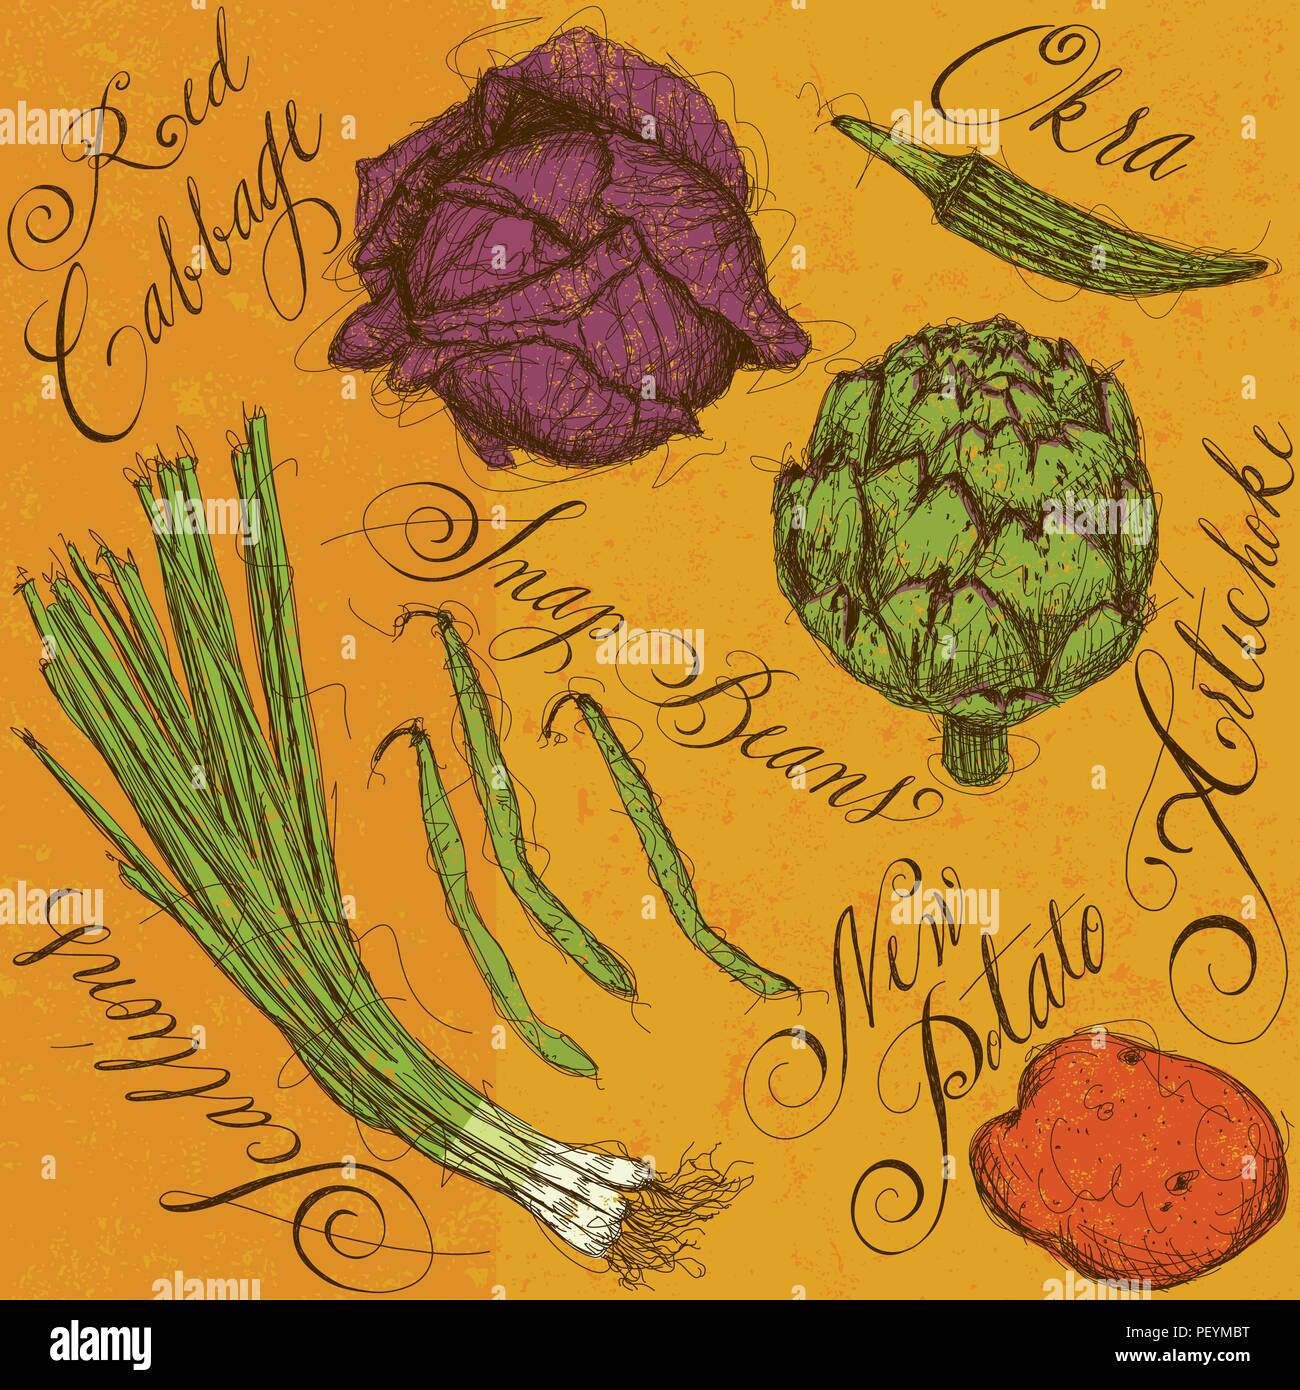 Légumes mélangés avec la calligraphie. Les légumes sont les oignons verts, l'okra, haricots, artichauts, chou rouge, et une nouvelle pomme de terre. Illustration de Vecteur